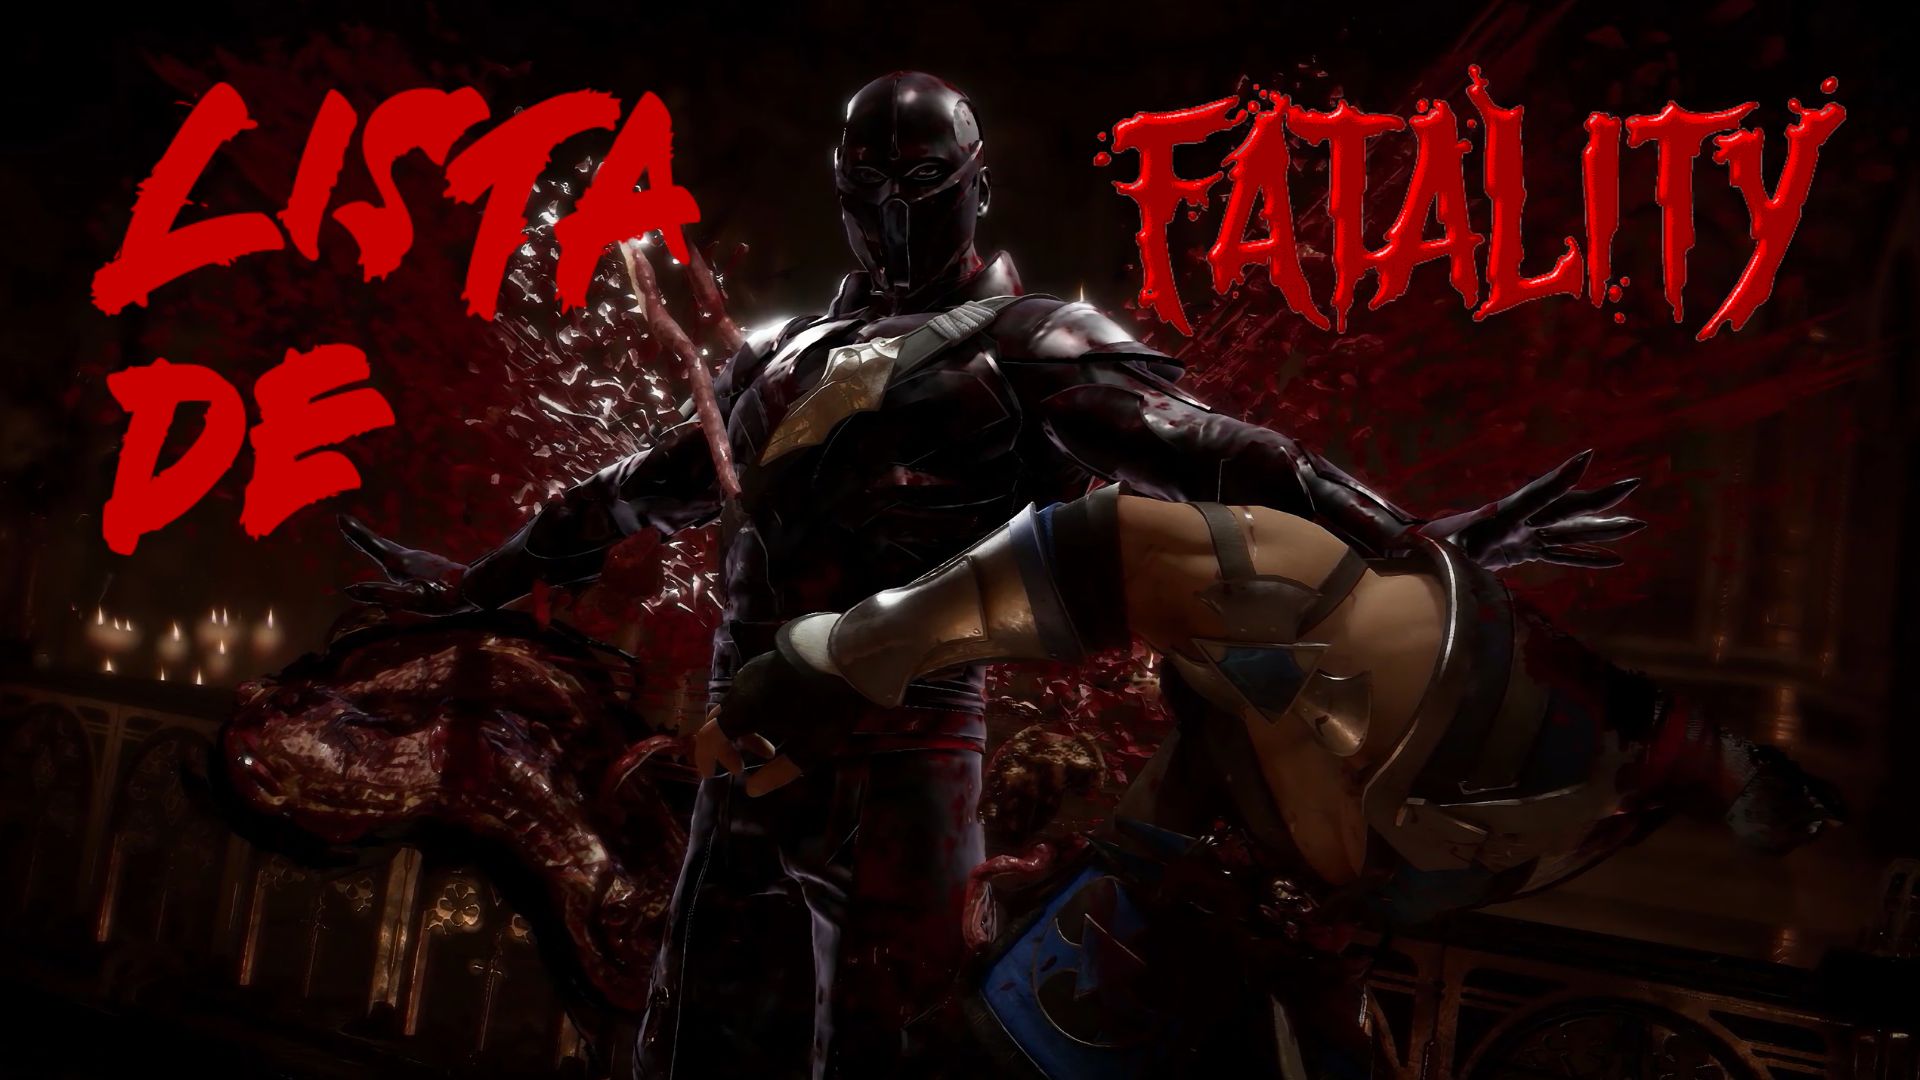 Mortal Kombat 11: How To Do Liu Kang's Fatalities